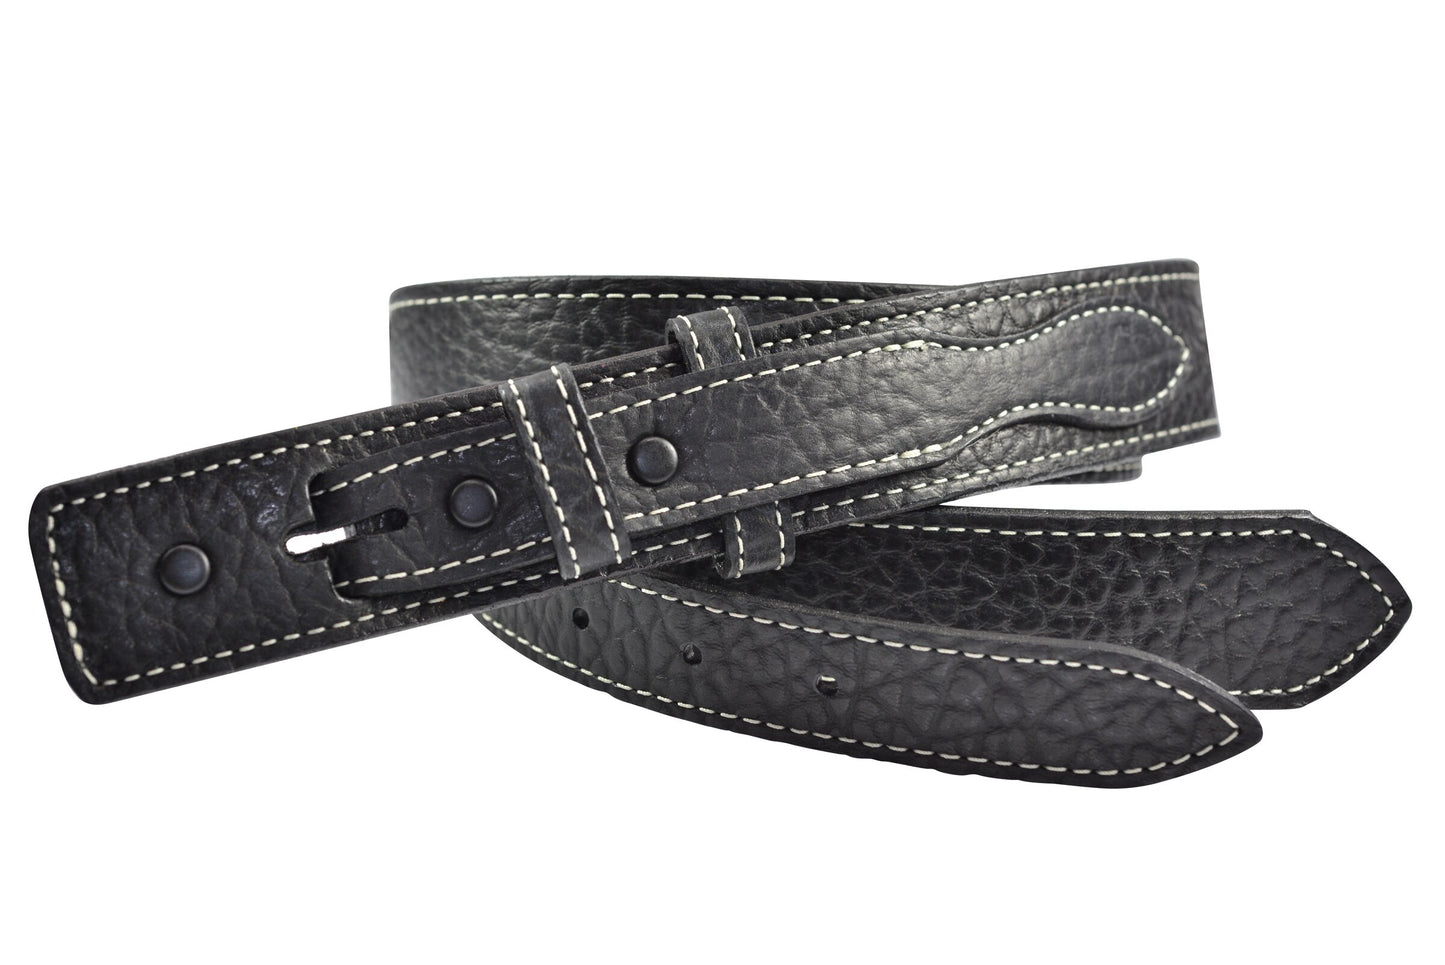 Full Grain Solid Bison Leather Ranger Belt Strap - Made in USA - Black